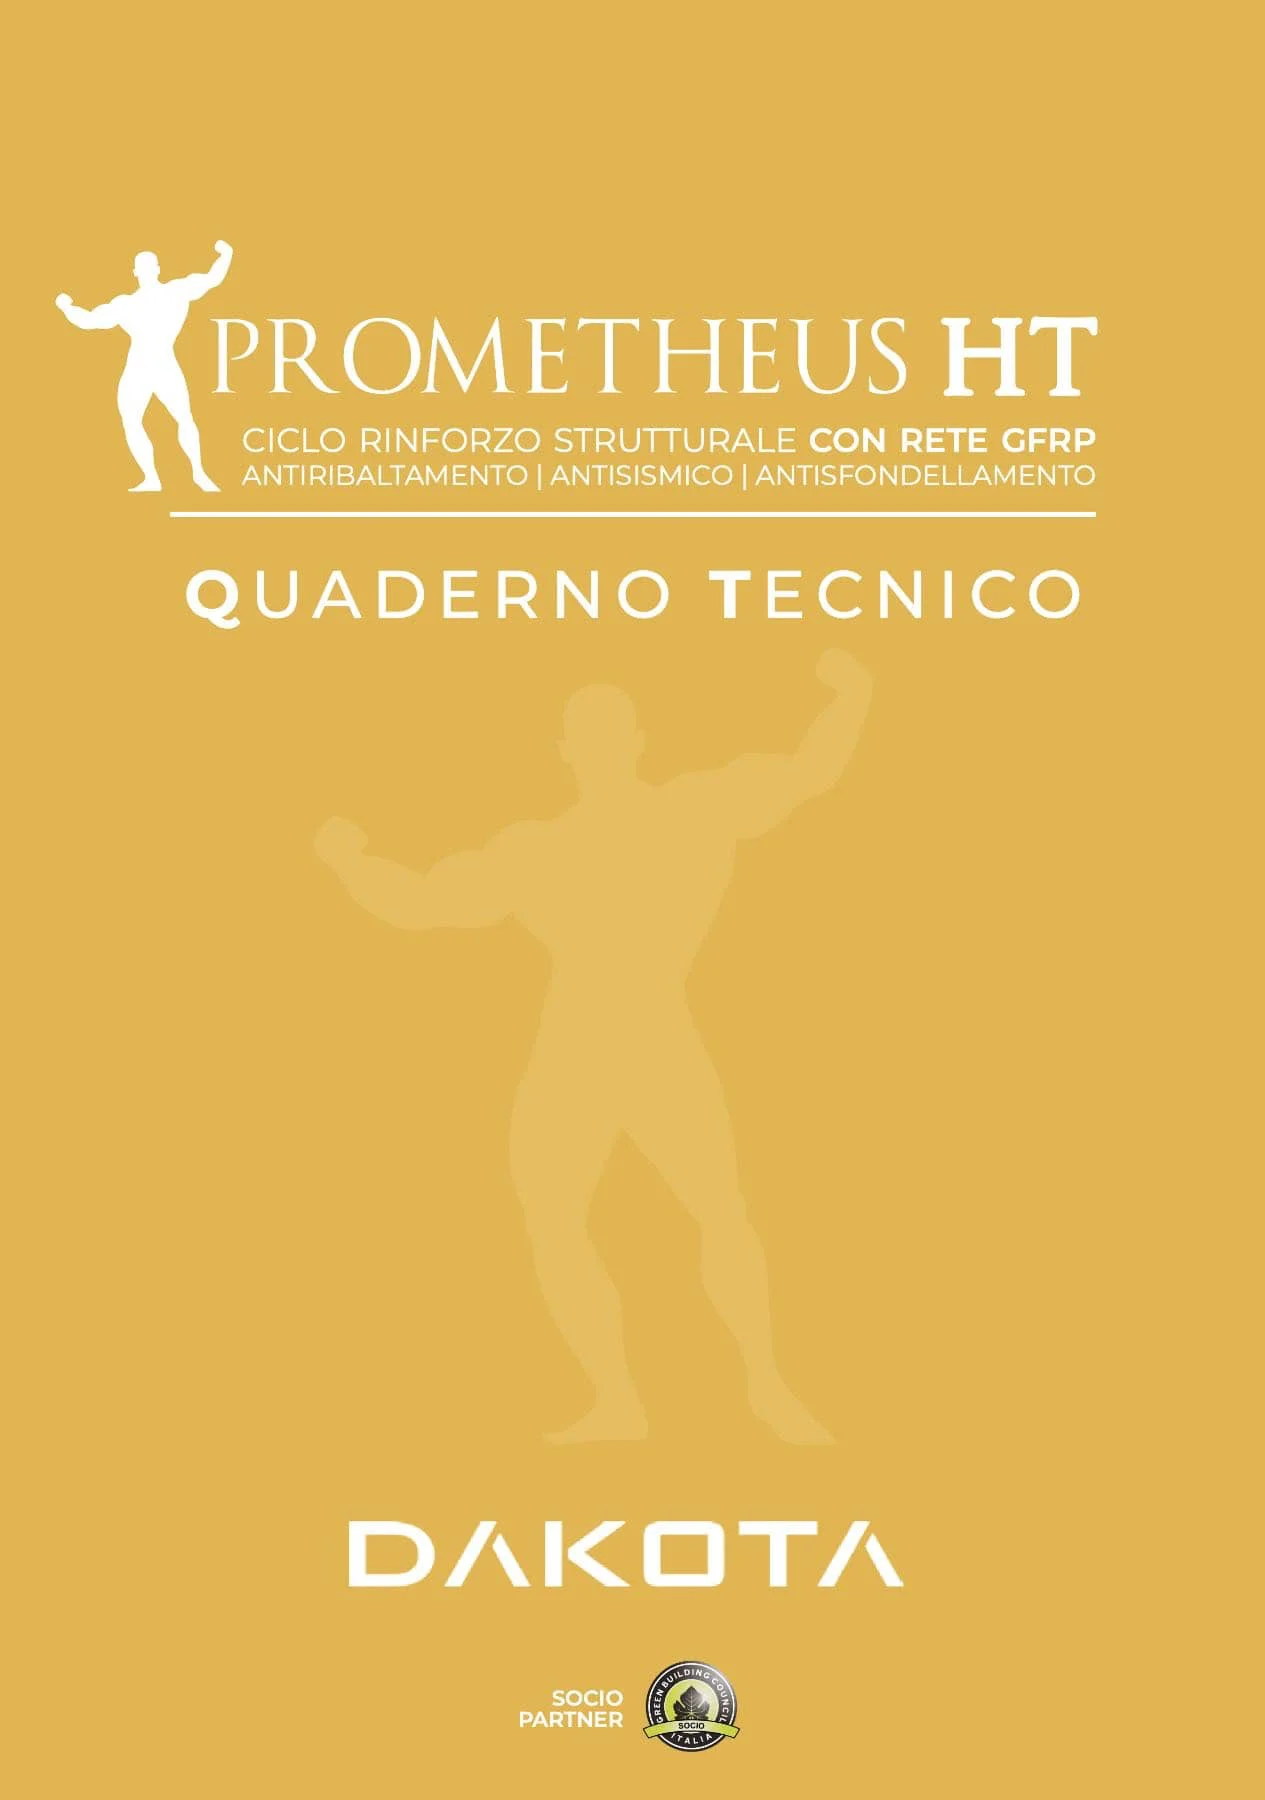 quaderno-tecnico-prometheus-ht